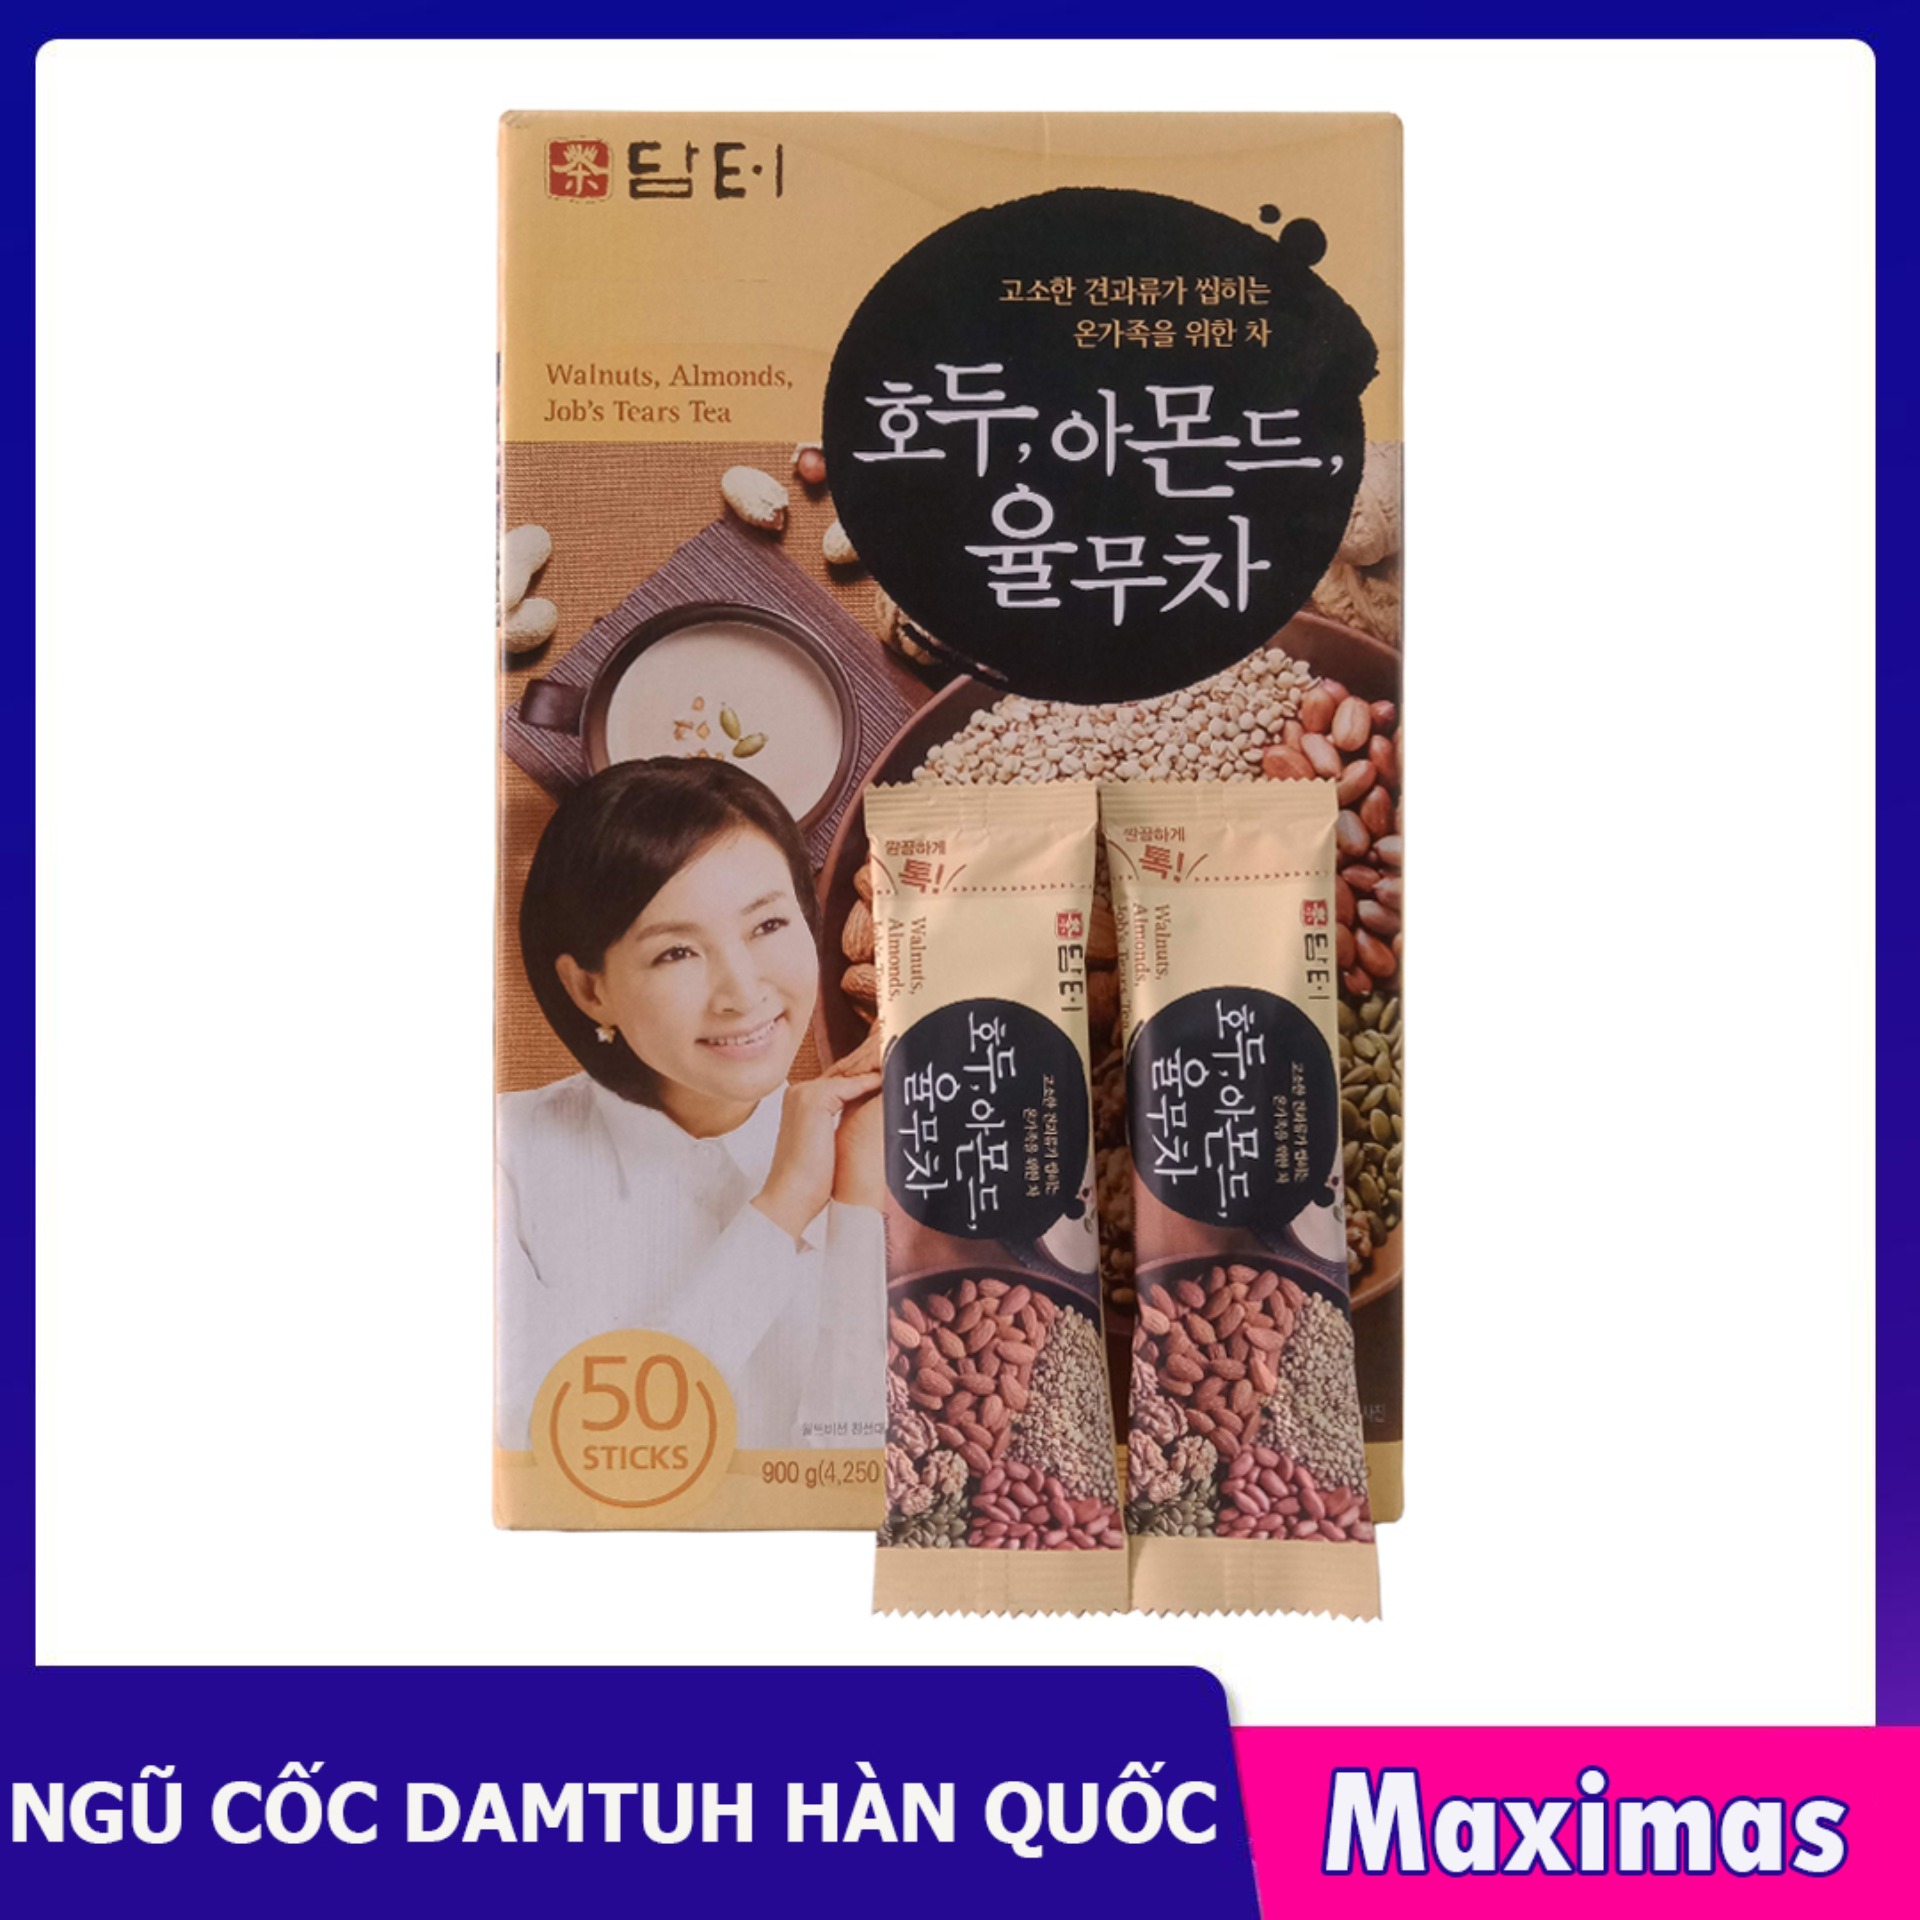 Bột ngũ cốc hạt Óc chó Hạnh nhân Damtuh Hàn Quốc 18g x 50 gói - Ăn vặt Hàn